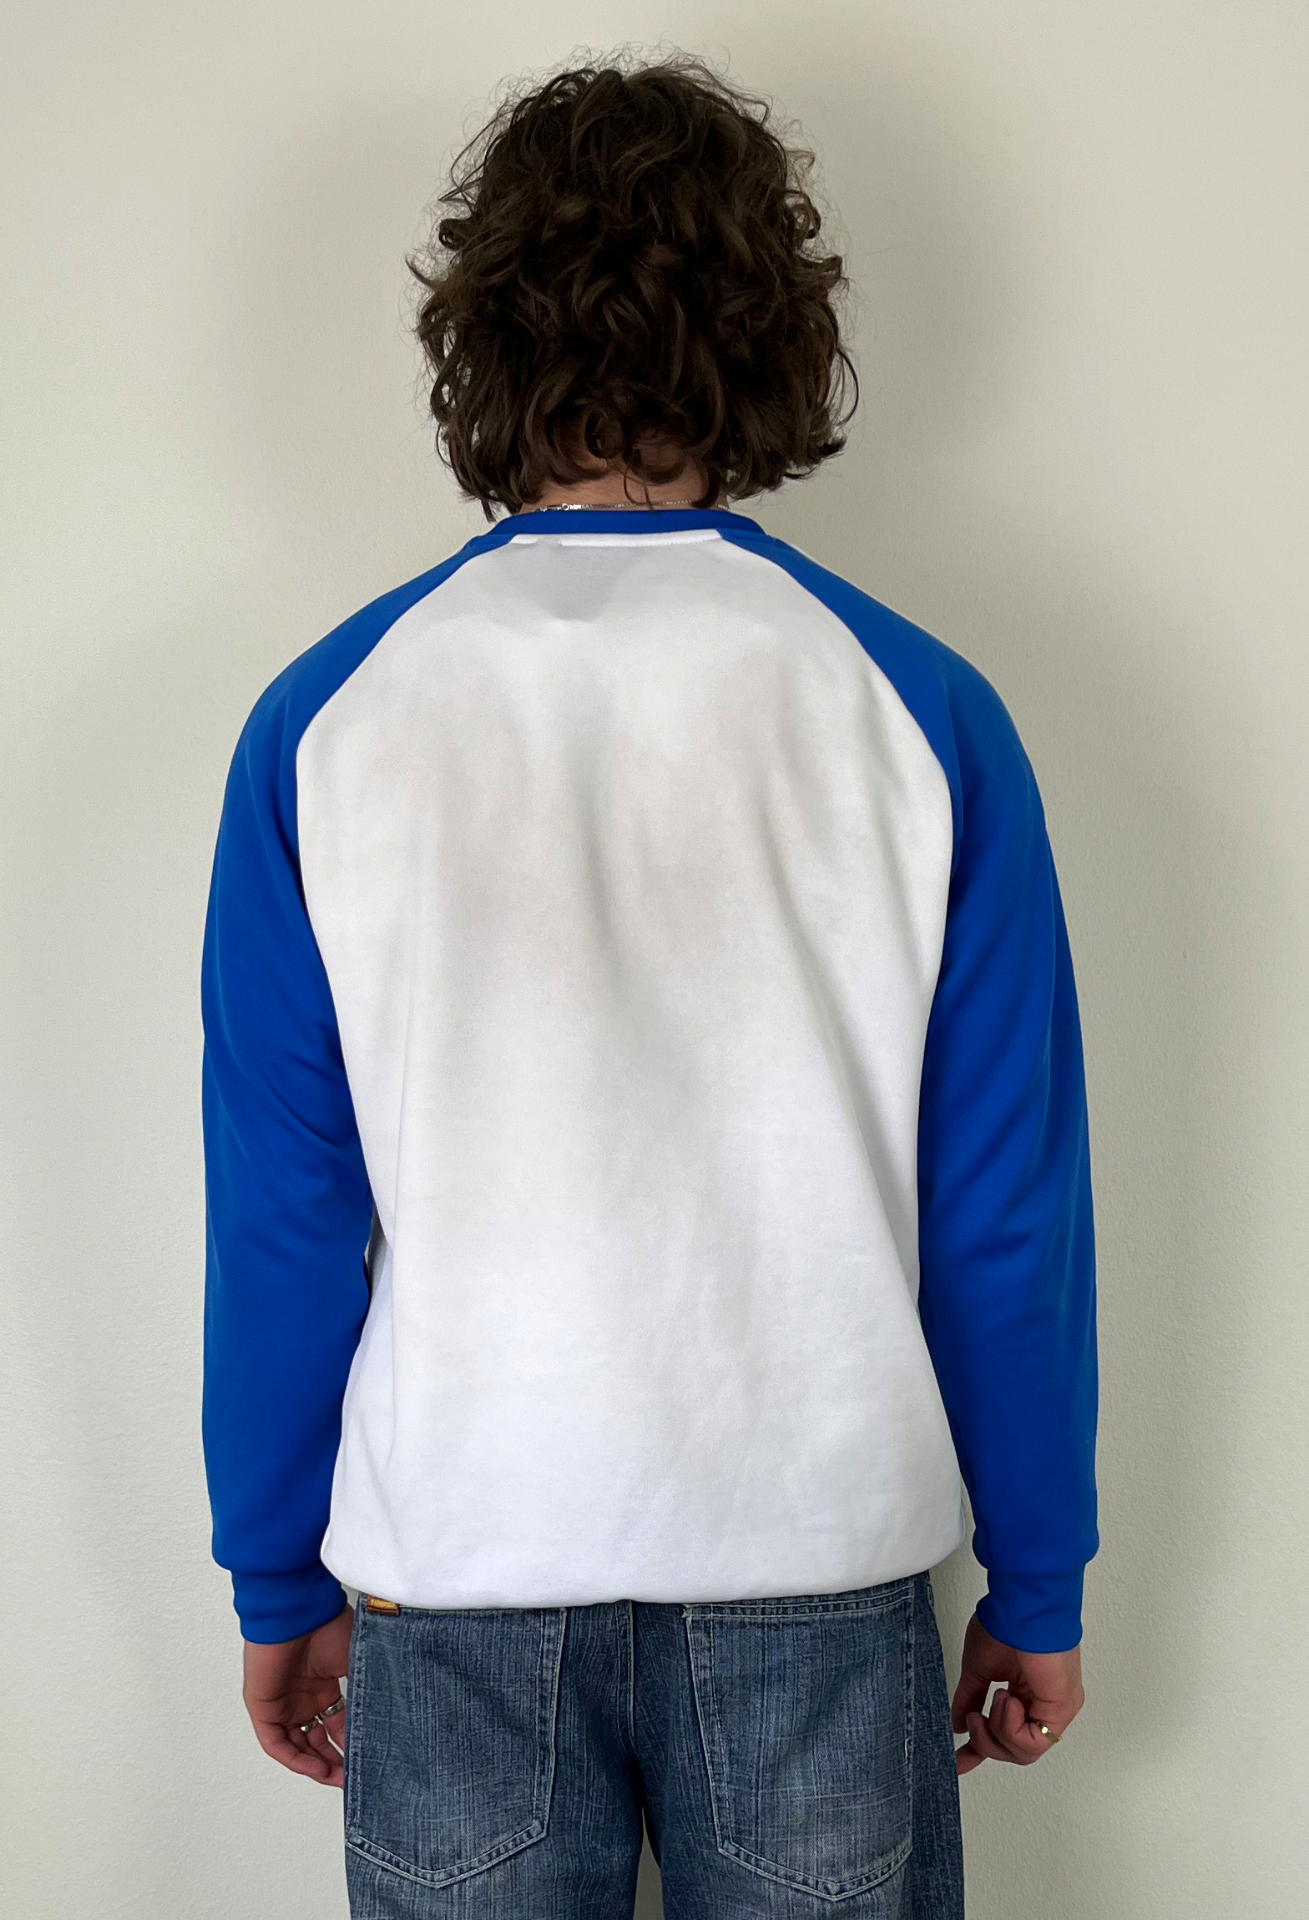 Adidas - Blue & White Sweatshirt (L)